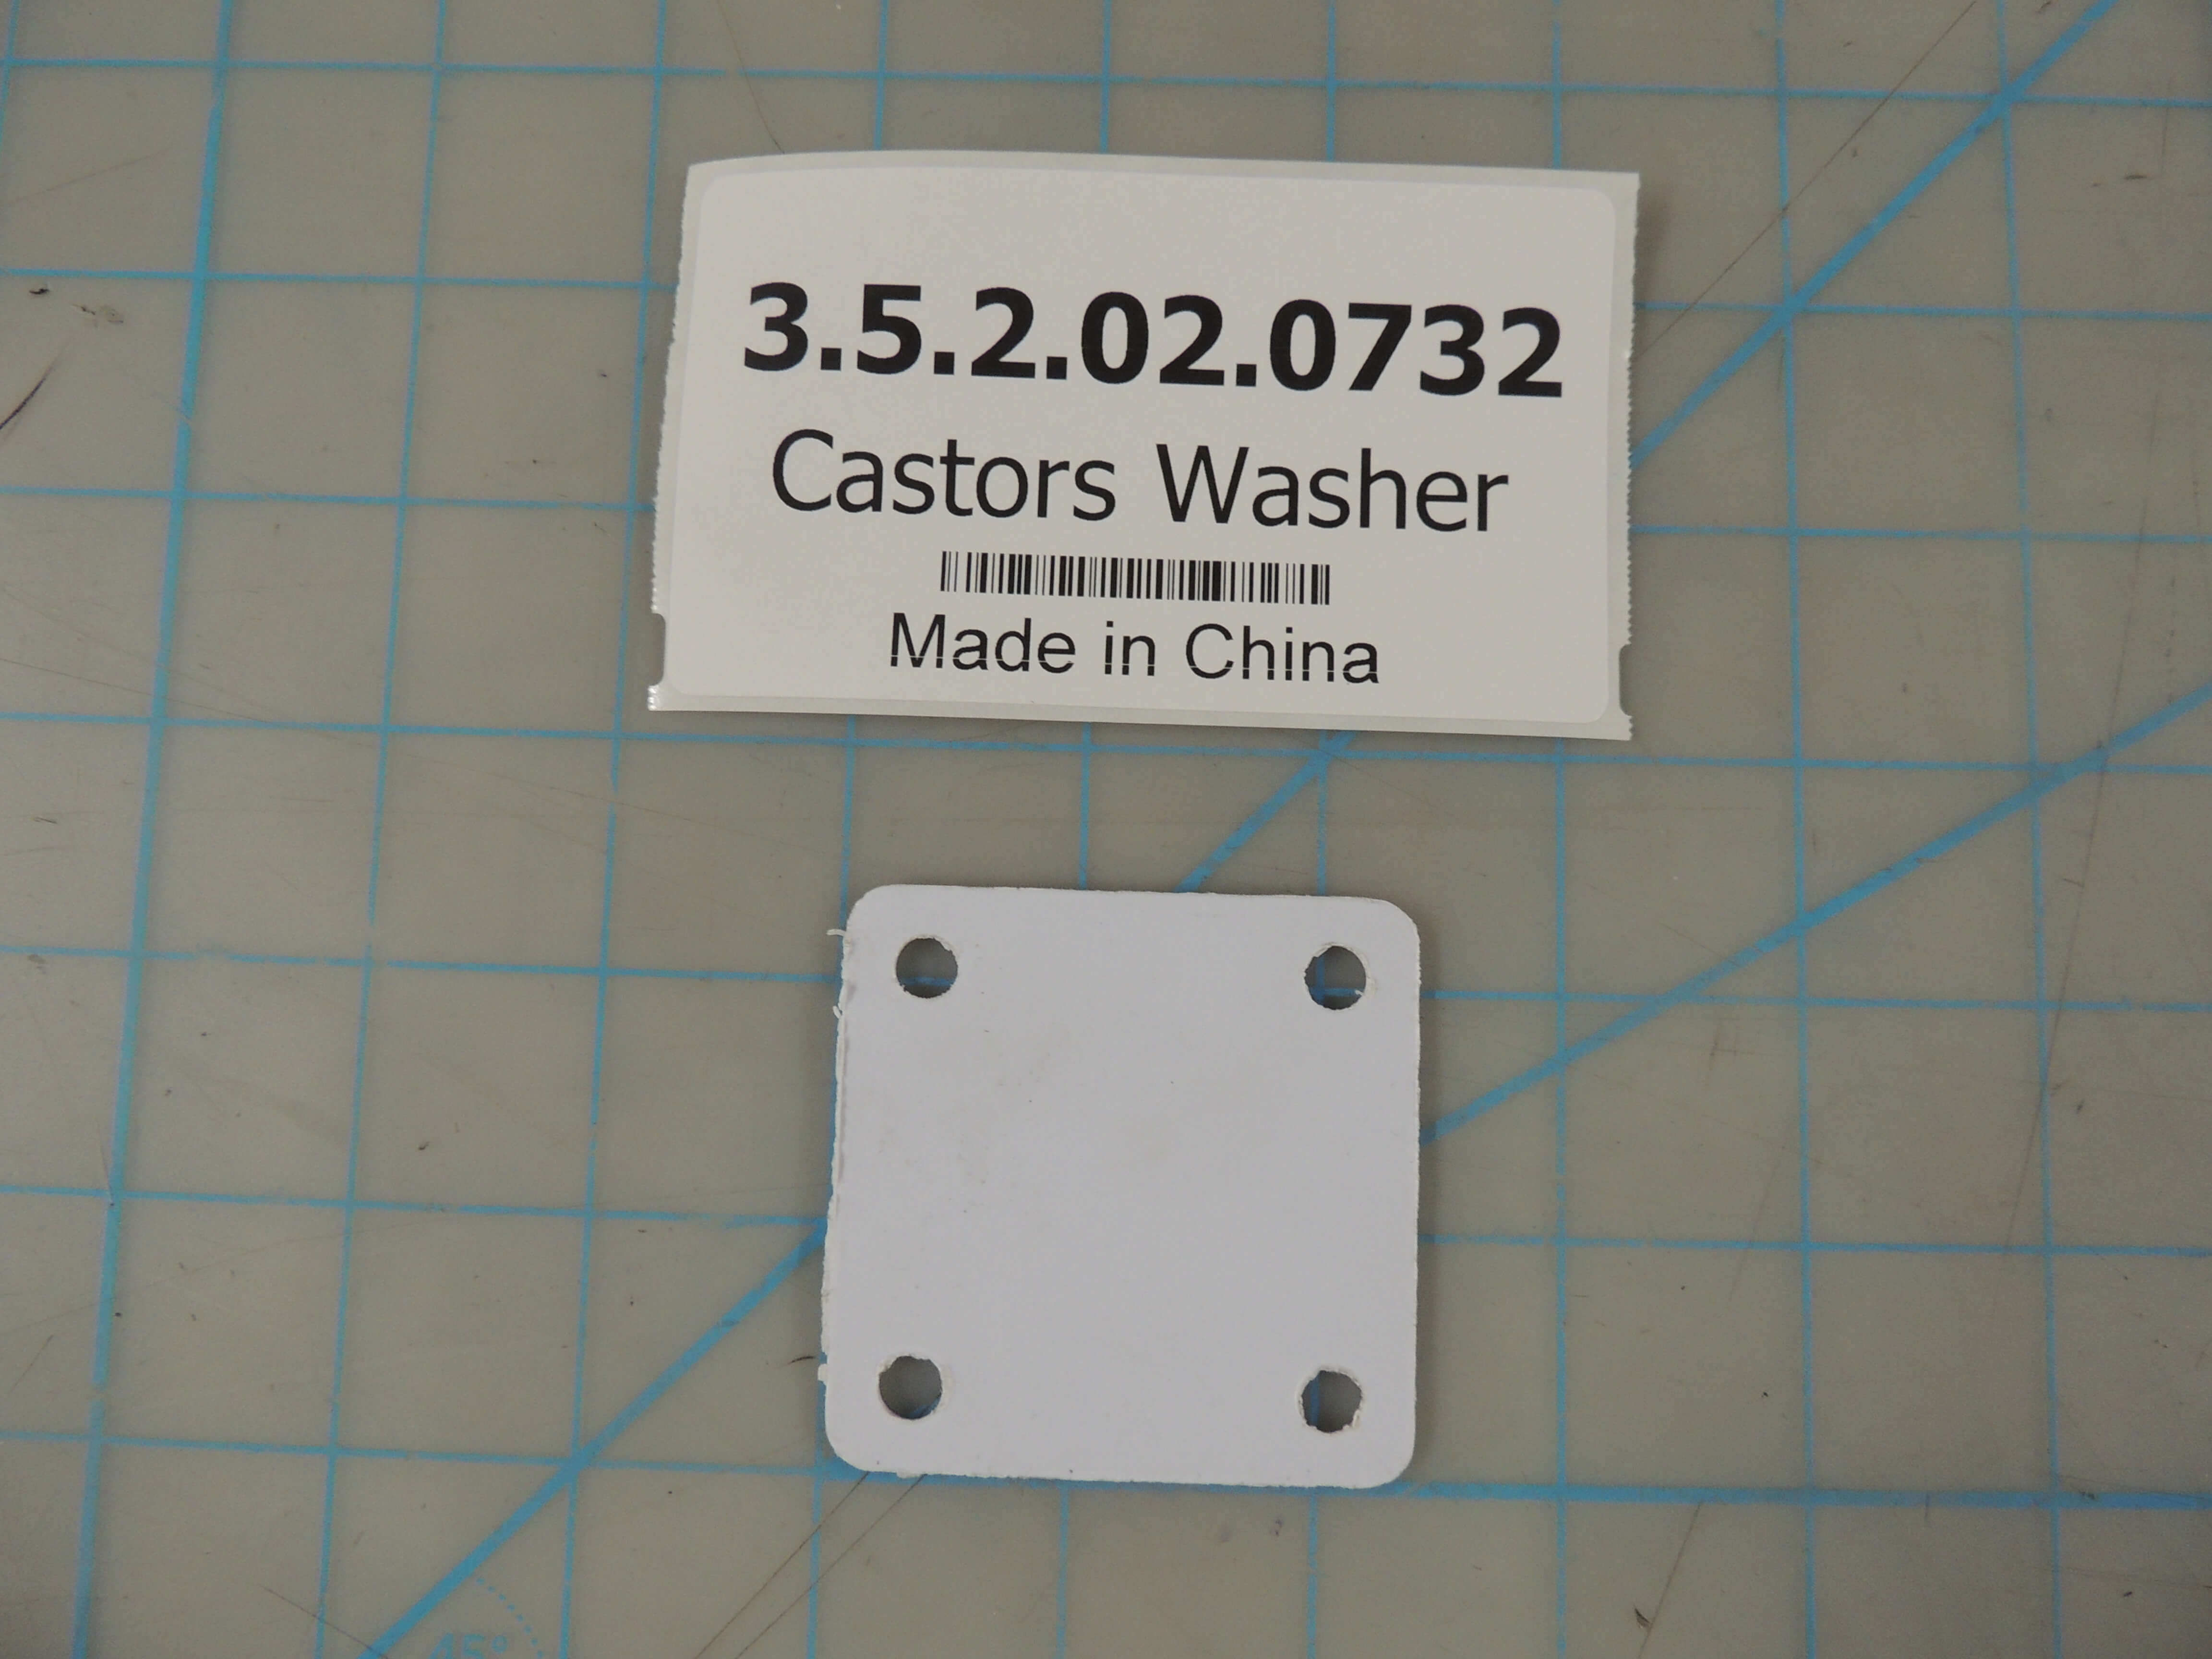 Castors Washer